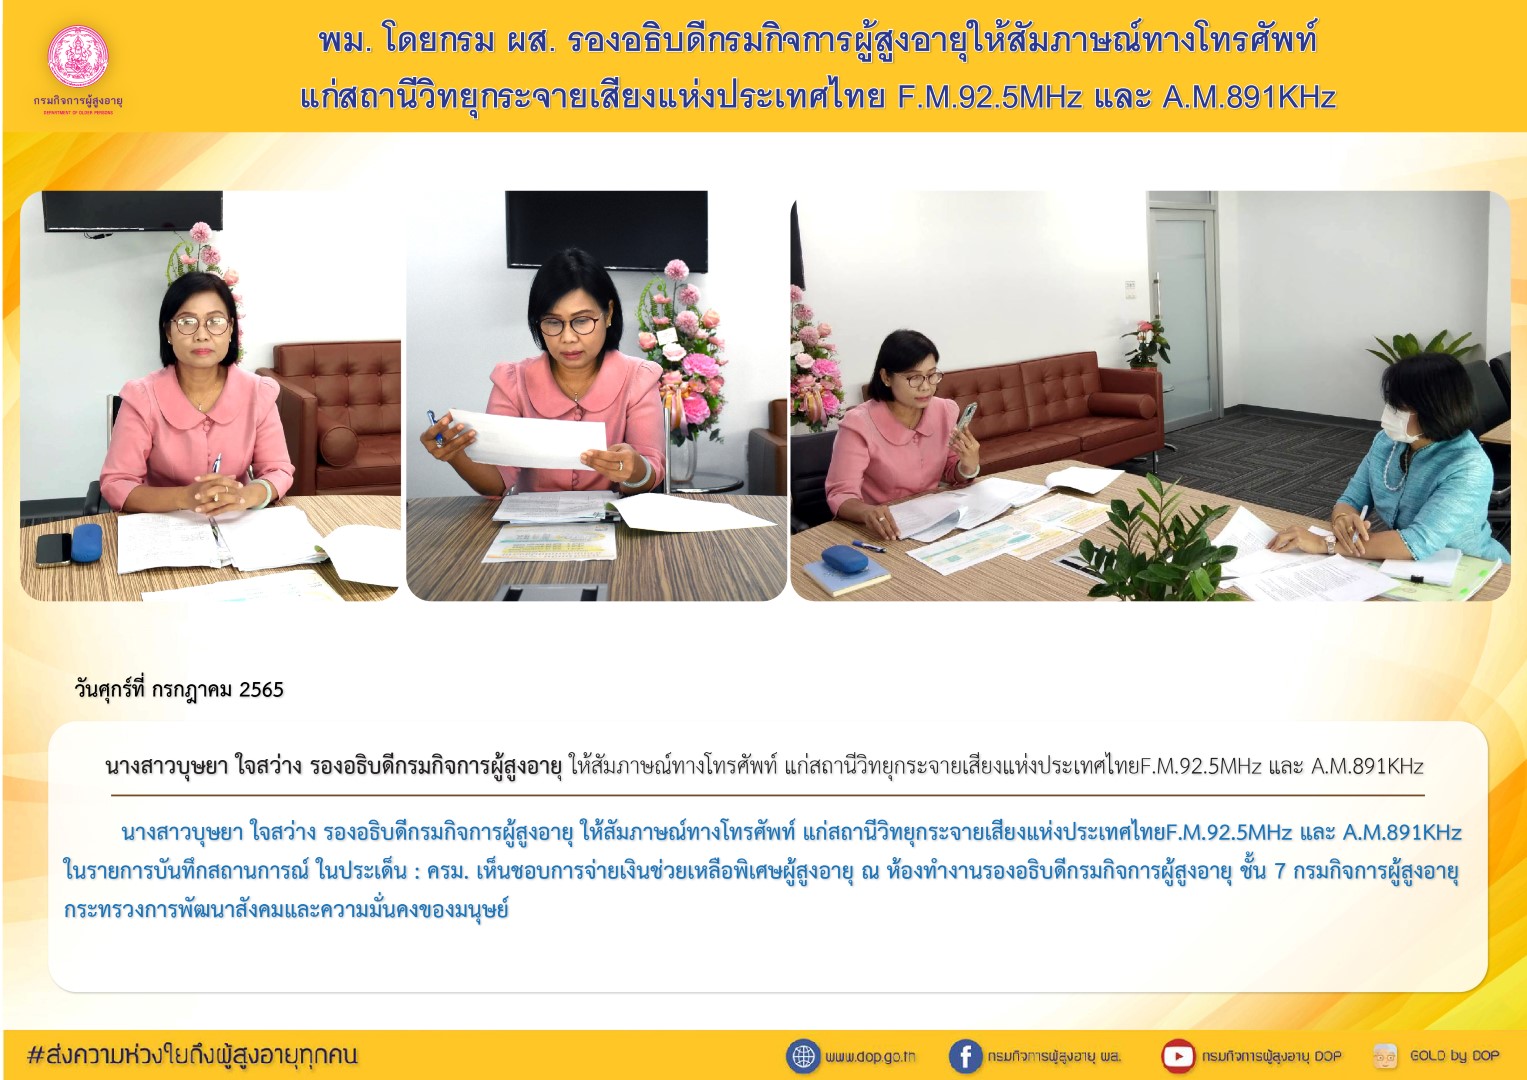 พม. โดยกรม ผส. รองอธิบดีกรมกิจการผู้สูงอายุให้สัมภาษณ์ทางโทรศัพท์แก่สถานีวิทยุกระจายเสียงแห่งประเทศไทย F.M.92.5MHz และ A.M.891KHz